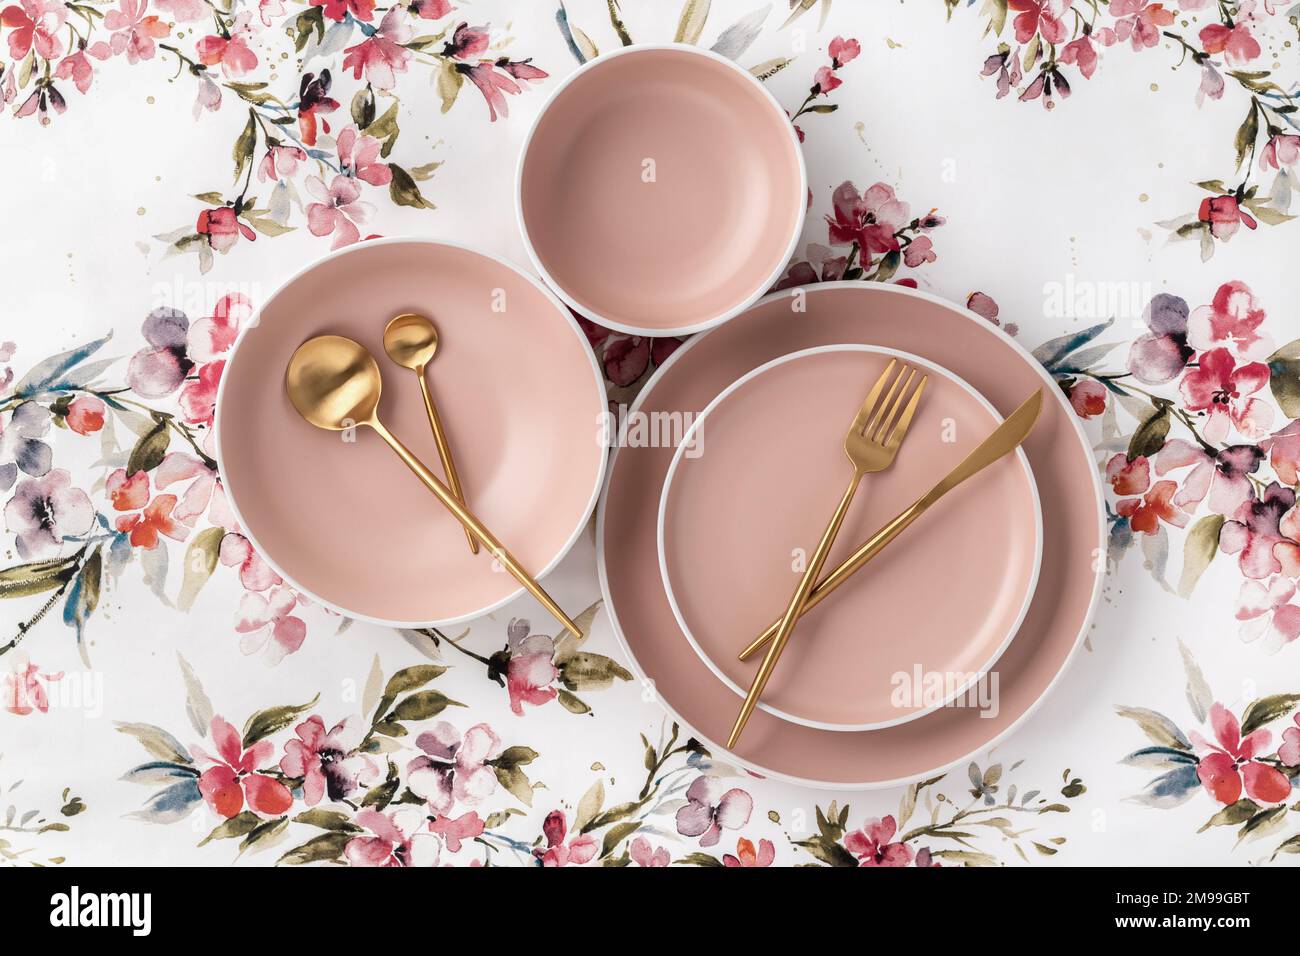 Geschirr und Besteck auf einer weißen Tischdecke mit Blumenmuster, Blick von oben auf den Tisch. Flach liegendes Design. Leere Keramikteller, Utensilien zum Servieren. Tr Stockfoto